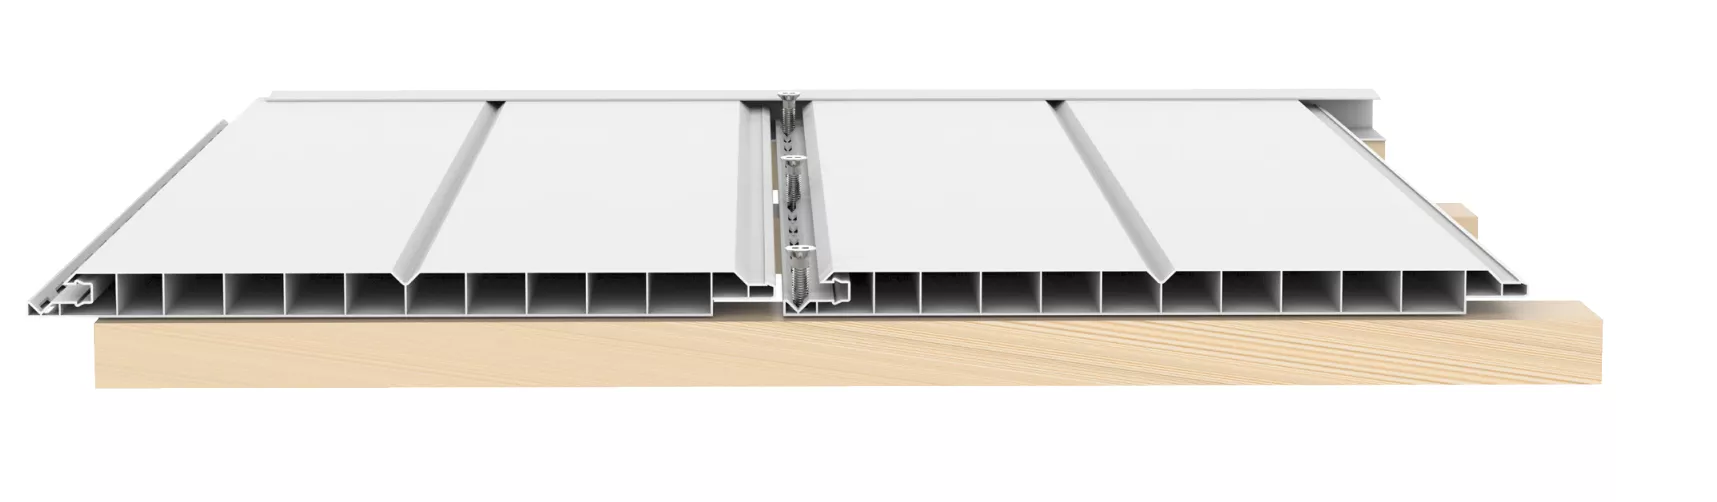 Plank-Dach Profil